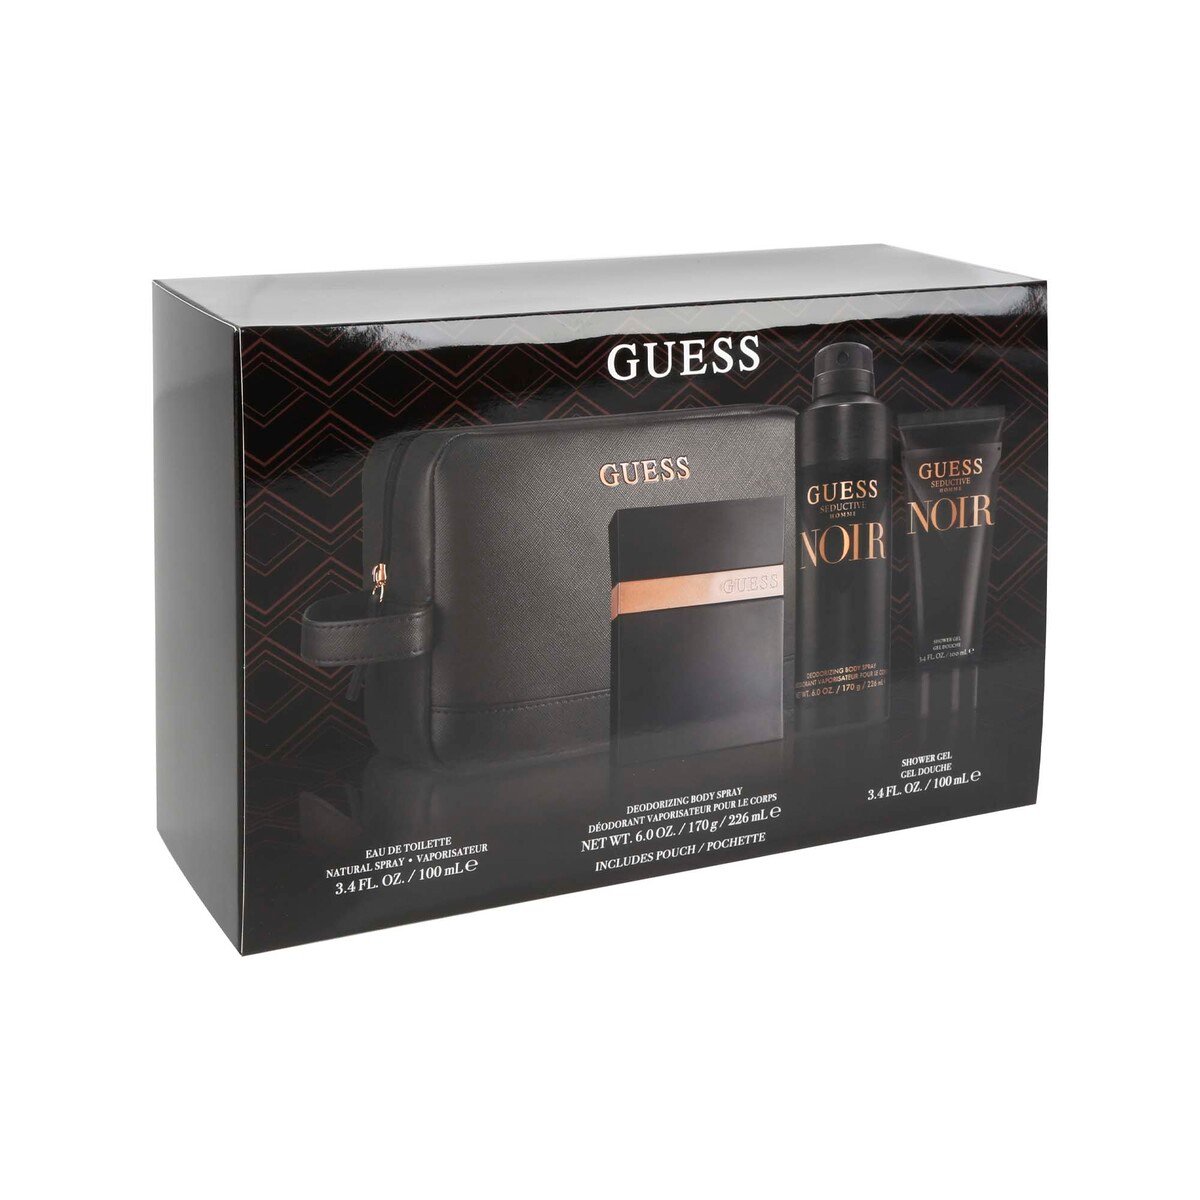 Guess Seductive Noir Set For Men, 100 ml Eau De Toilette, 100 ml Shower Gel, 170 G Body SprayWith Pouch